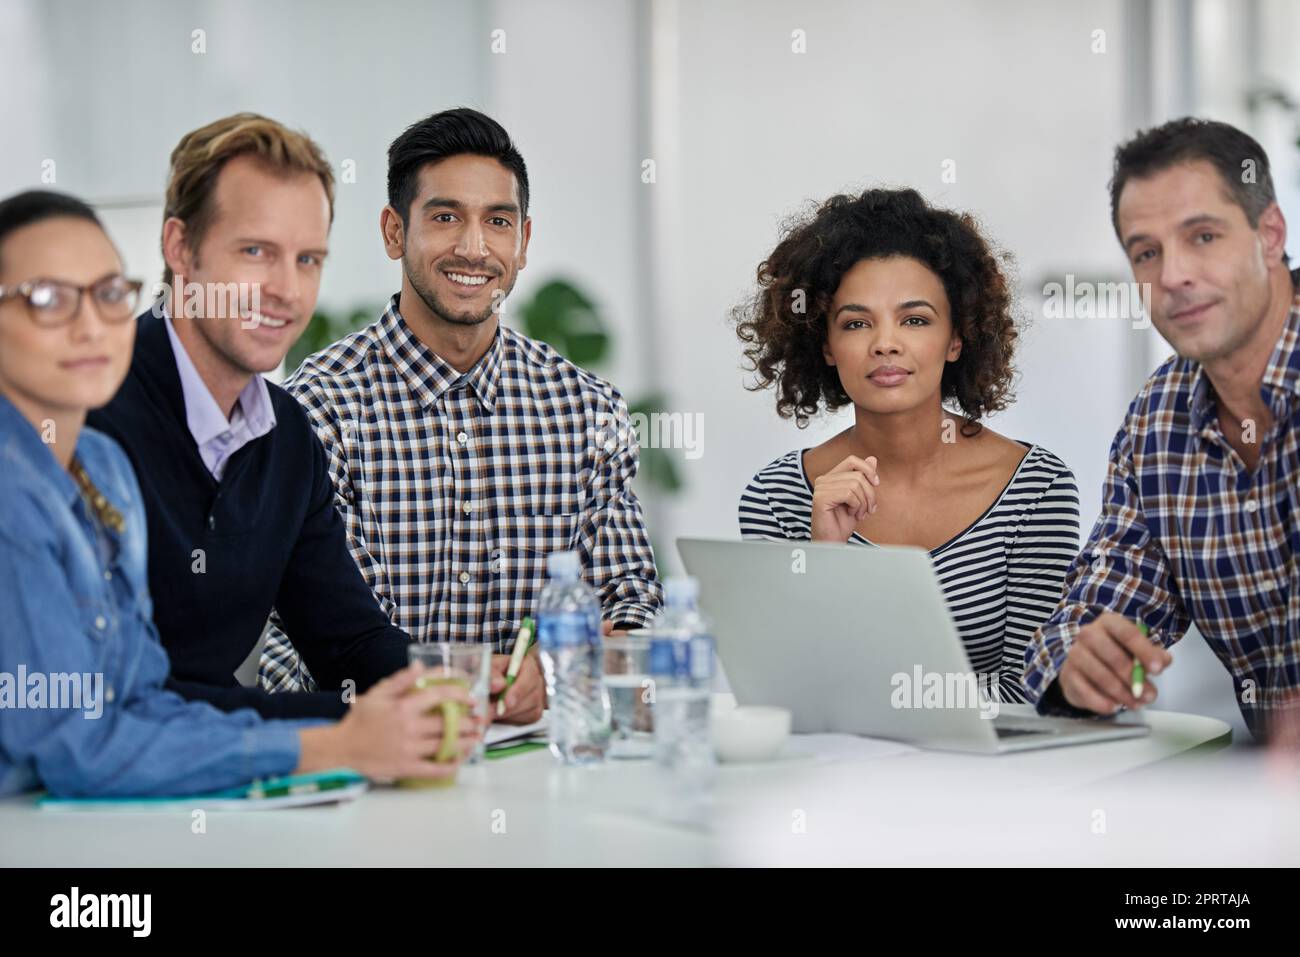 Starkes und selbstbewusstes Team. Gruppe von Kollegen, die an einem Besprechungstisch sitzen und die Kamera lächeln. Stockfoto